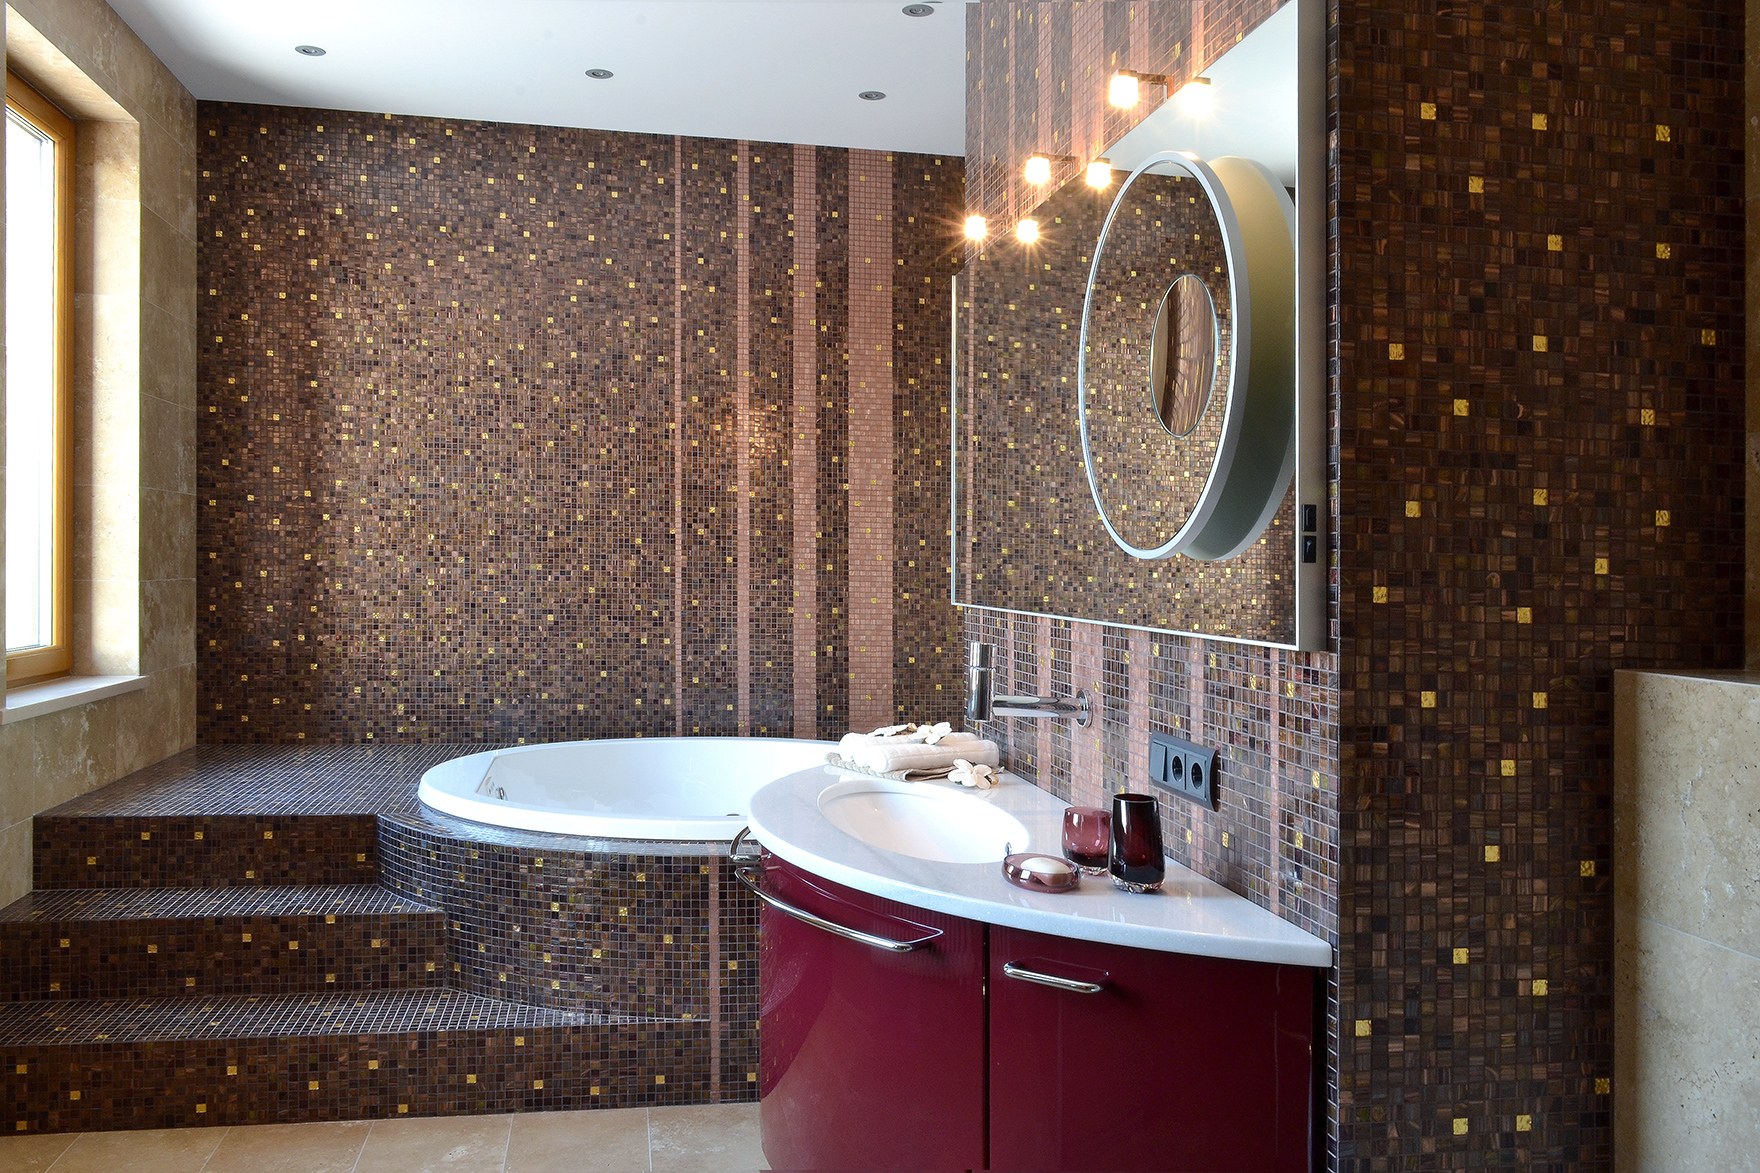 Мозаика для ванной plitka mosaica ru. Ванная с мозаичной плиткой. Отделка ванной комнаты мозаикой. Плитка мозаика для ванной. Ванная отделанная мозаикой.